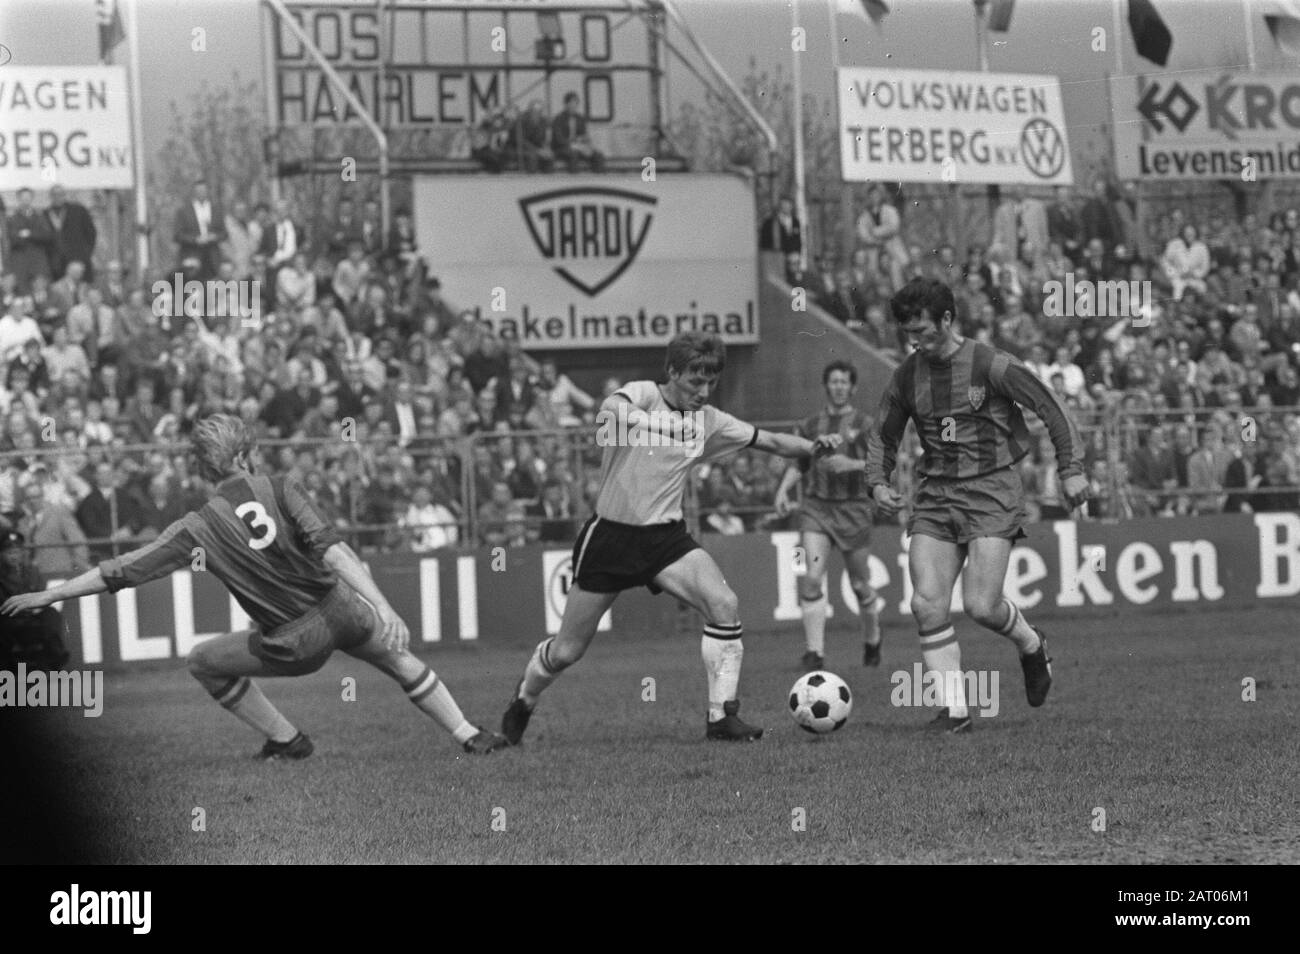 DOS V Haarlem 2-1; Spielmomente Datum: 3. Mai 1970 Ort: Haarlem Schlüsselwörter: Sport, Fußball Stockfoto